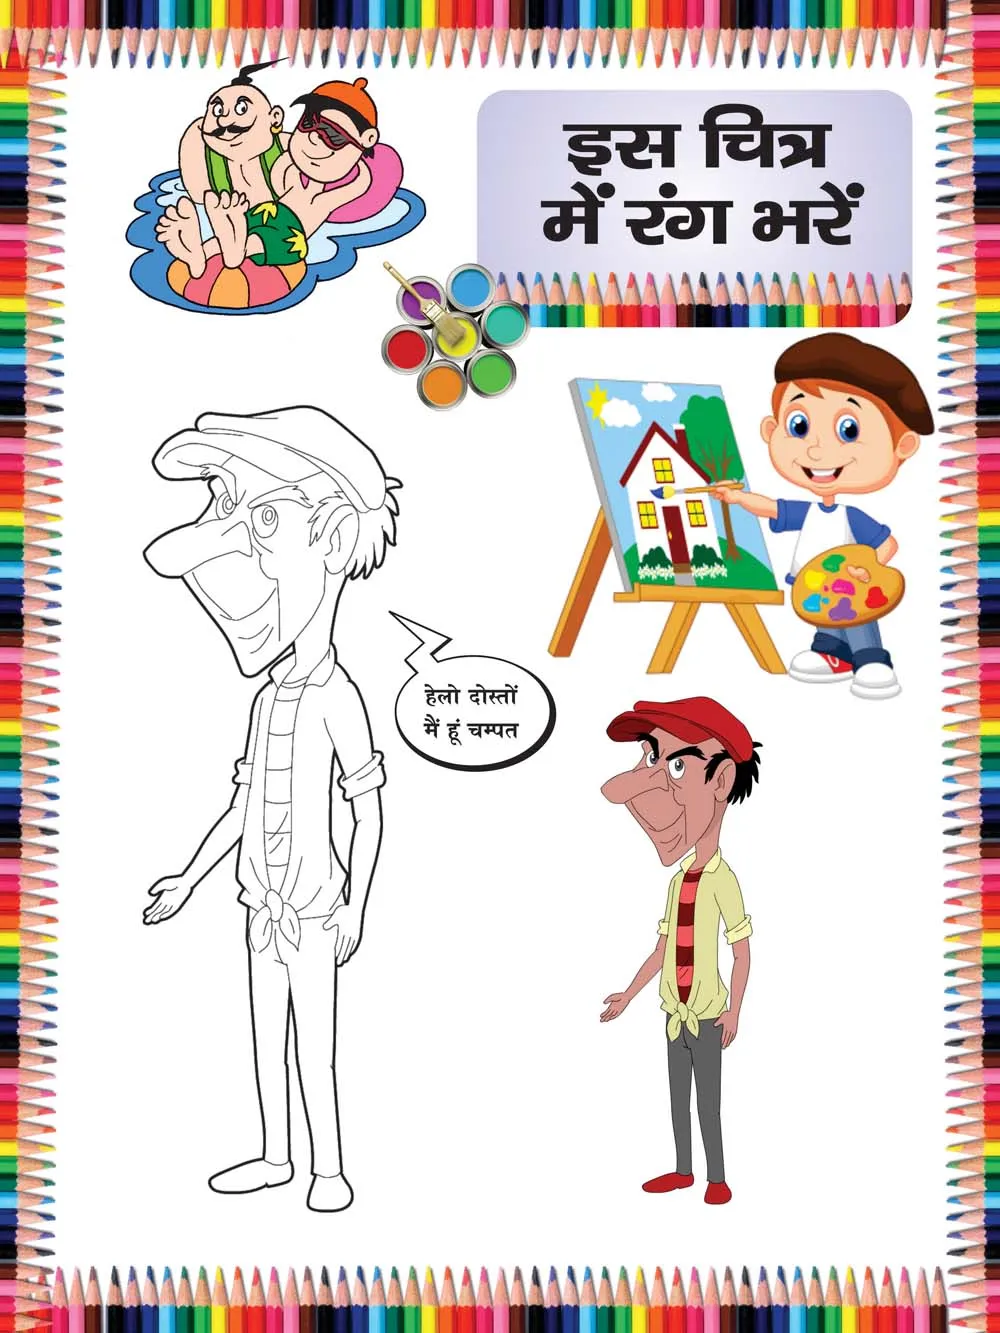 Hindi Diwas Drawing || Hindi Diwas Poster Drawing || Hindi Day Drawing ||  Hindi Diwas Painting - YouTube | Poster drawing, Flag drawing, Drawing  competition